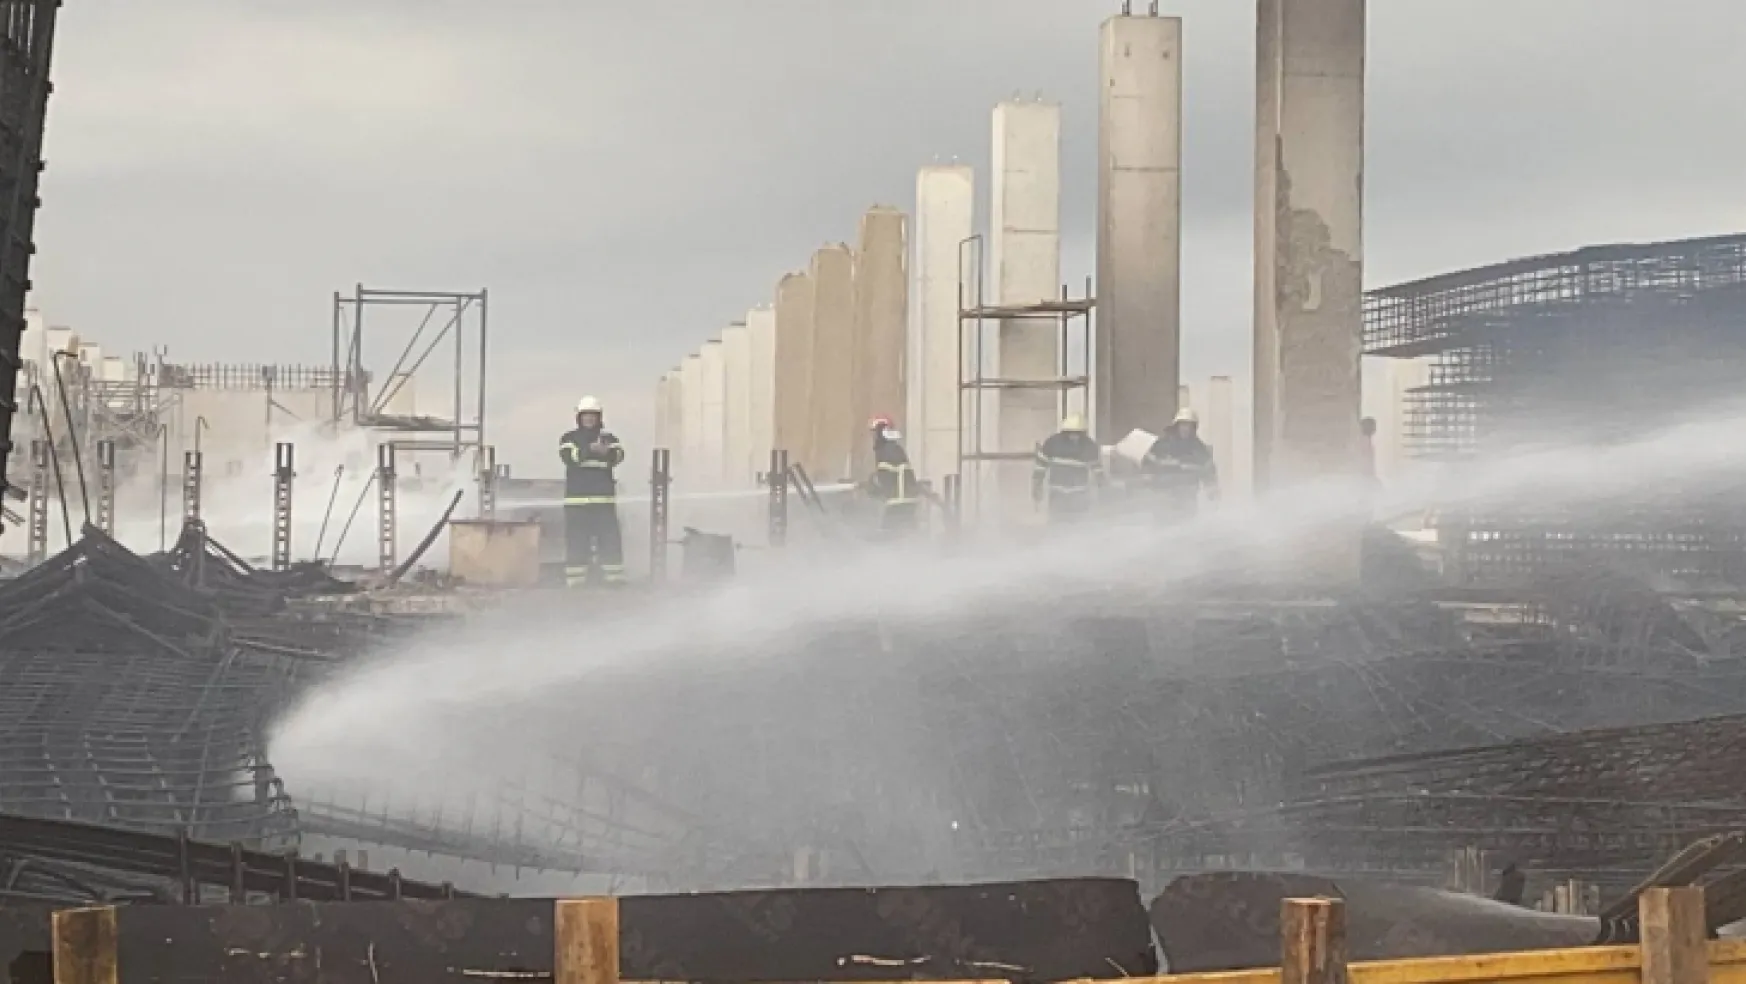 Kocaeli'de fabrika inşaatında yangın çıktı